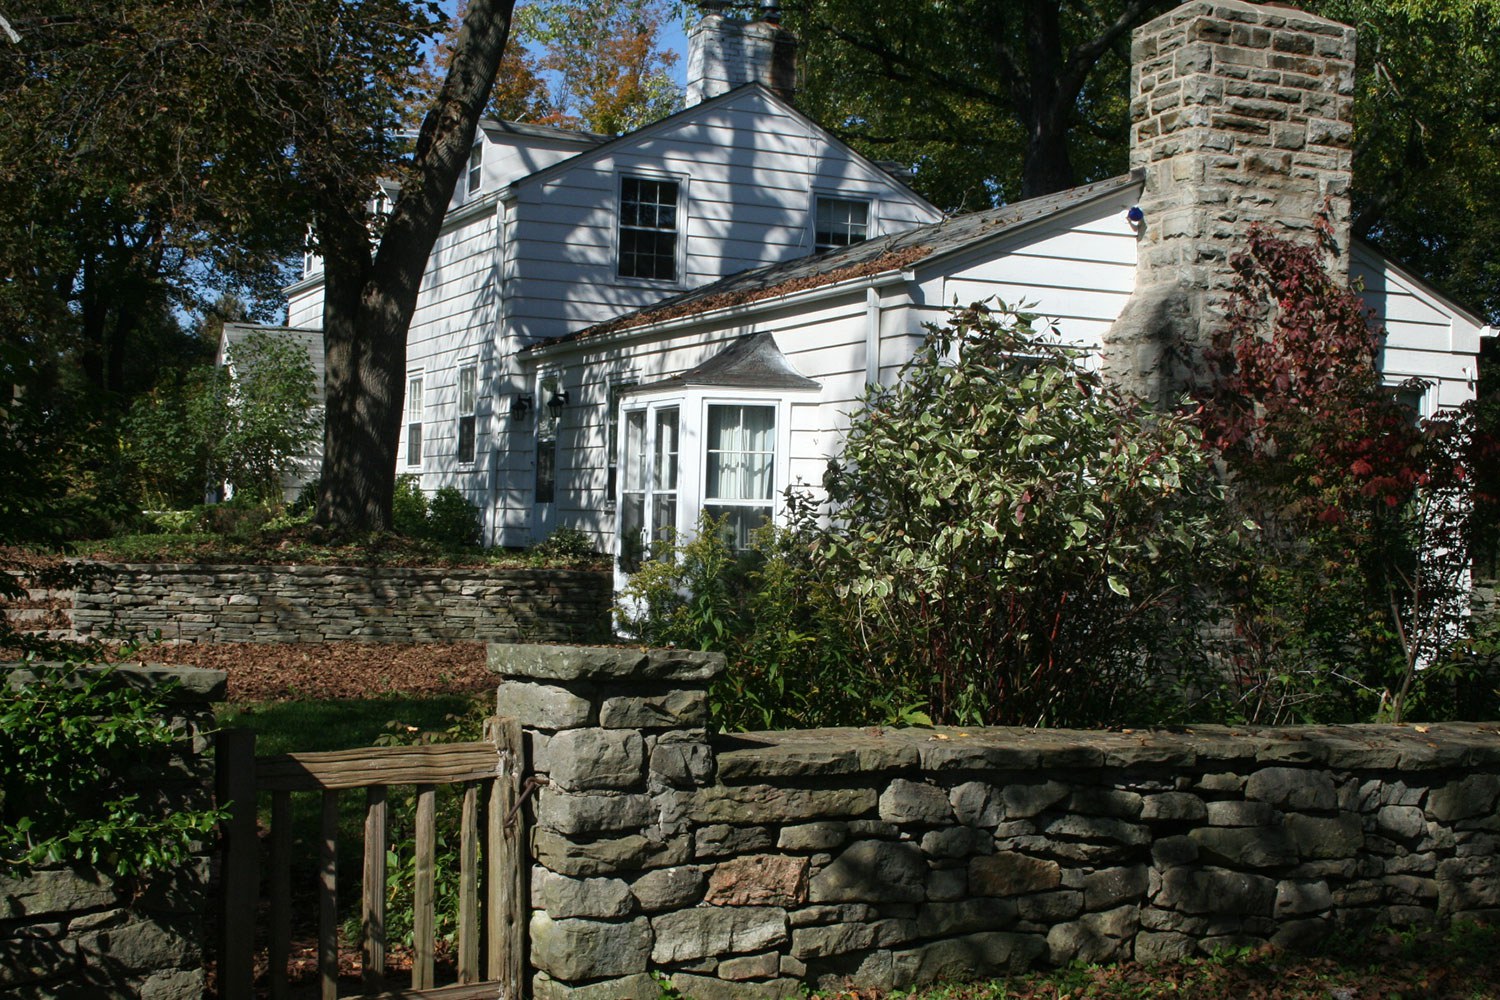 The Bennett Farmhouse